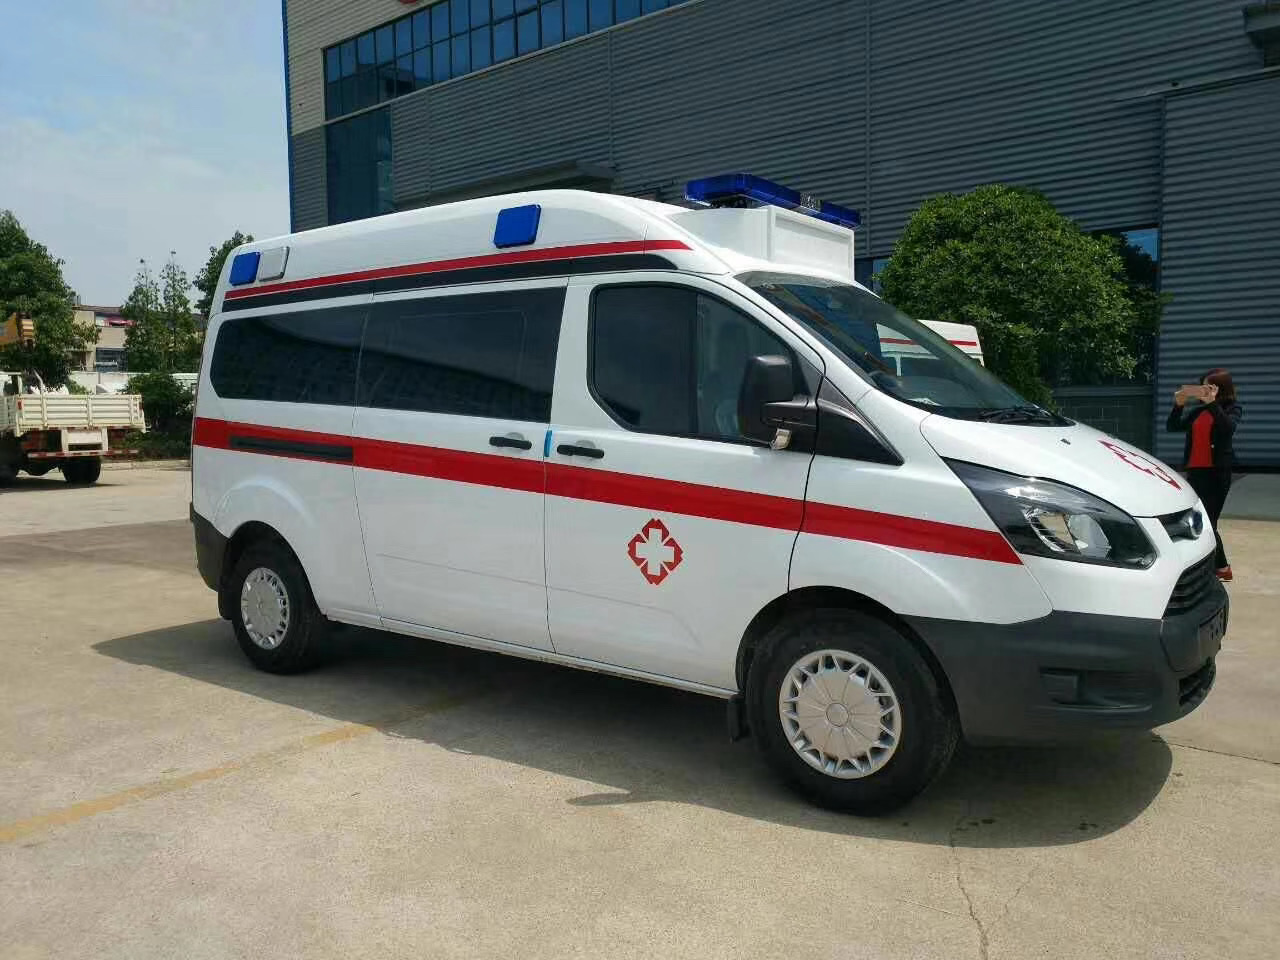 蓬安县救护车护送